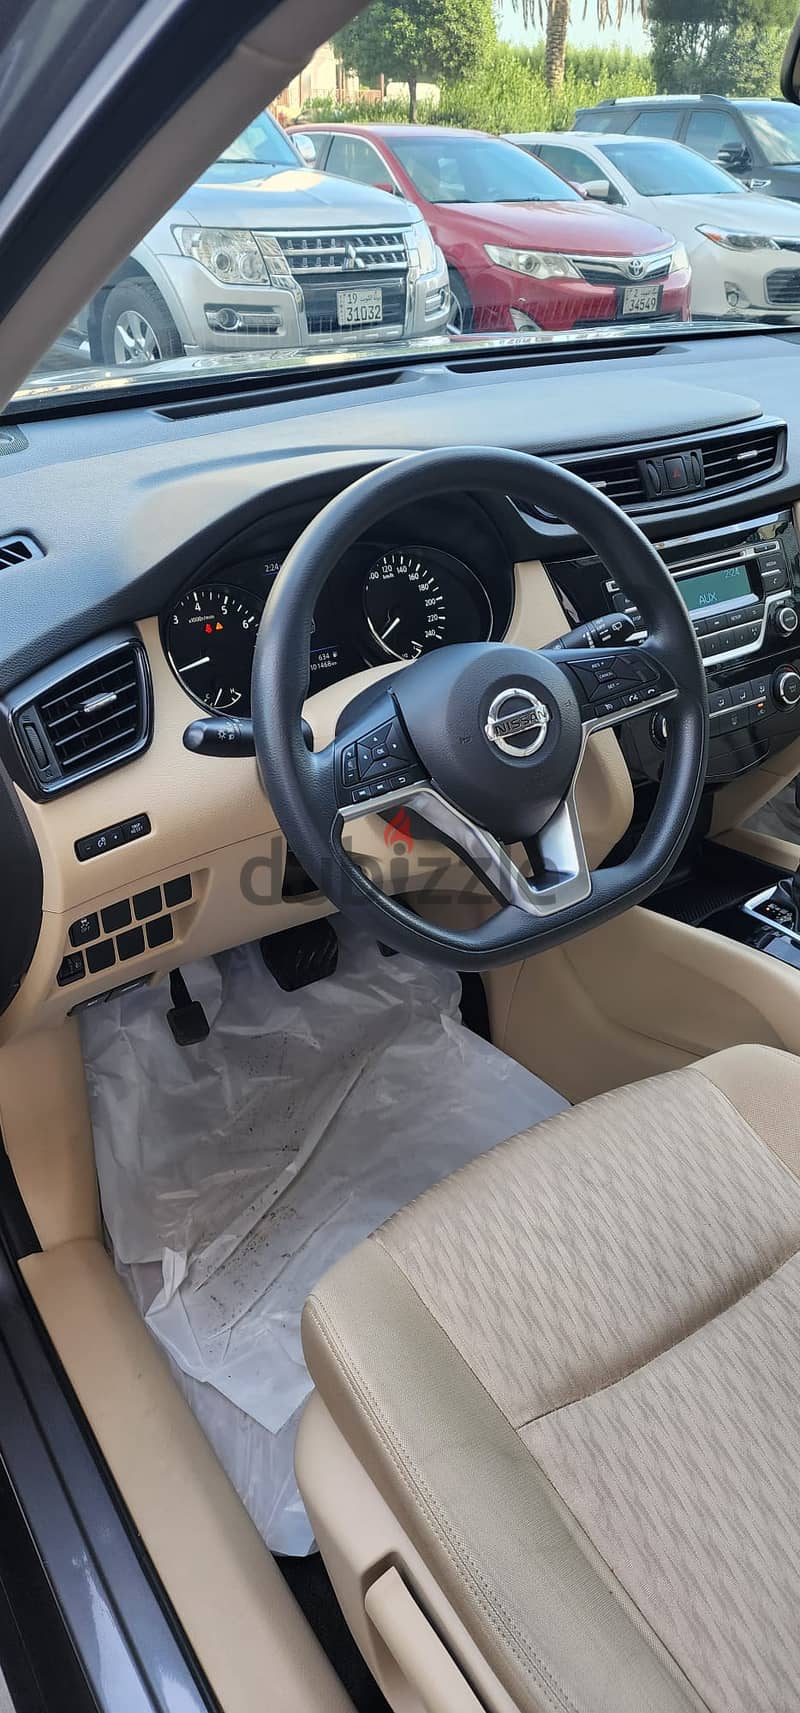 2019 Nissan X-Trail 2.5 cc V4 Excellent condition 8